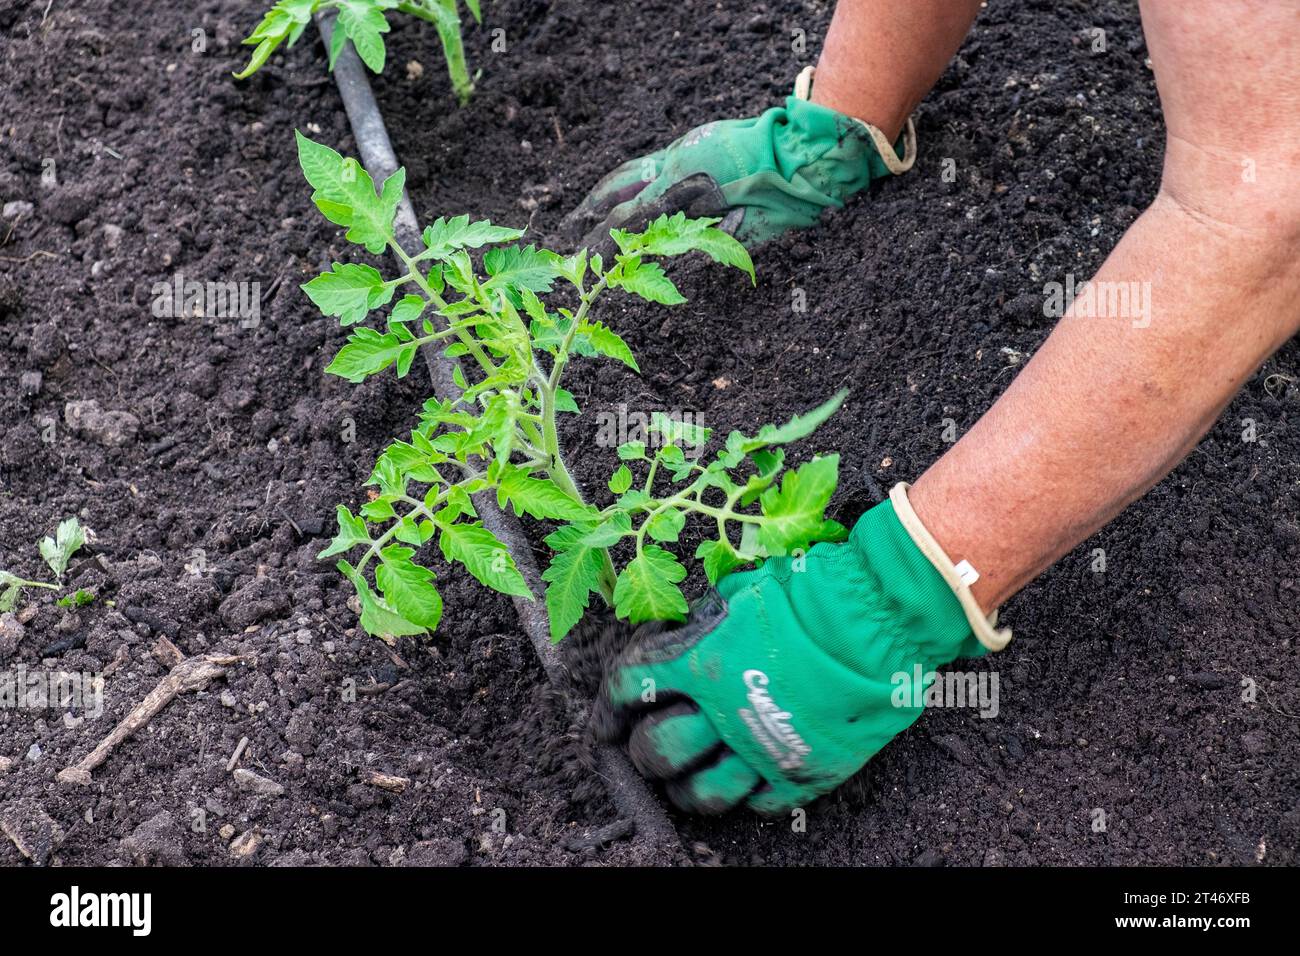 Piantare piantine di pomodoro San Marzano ben indurite in un letto da giardino ben preparato con rete di irrigazione a tubo lievito Foto Stock